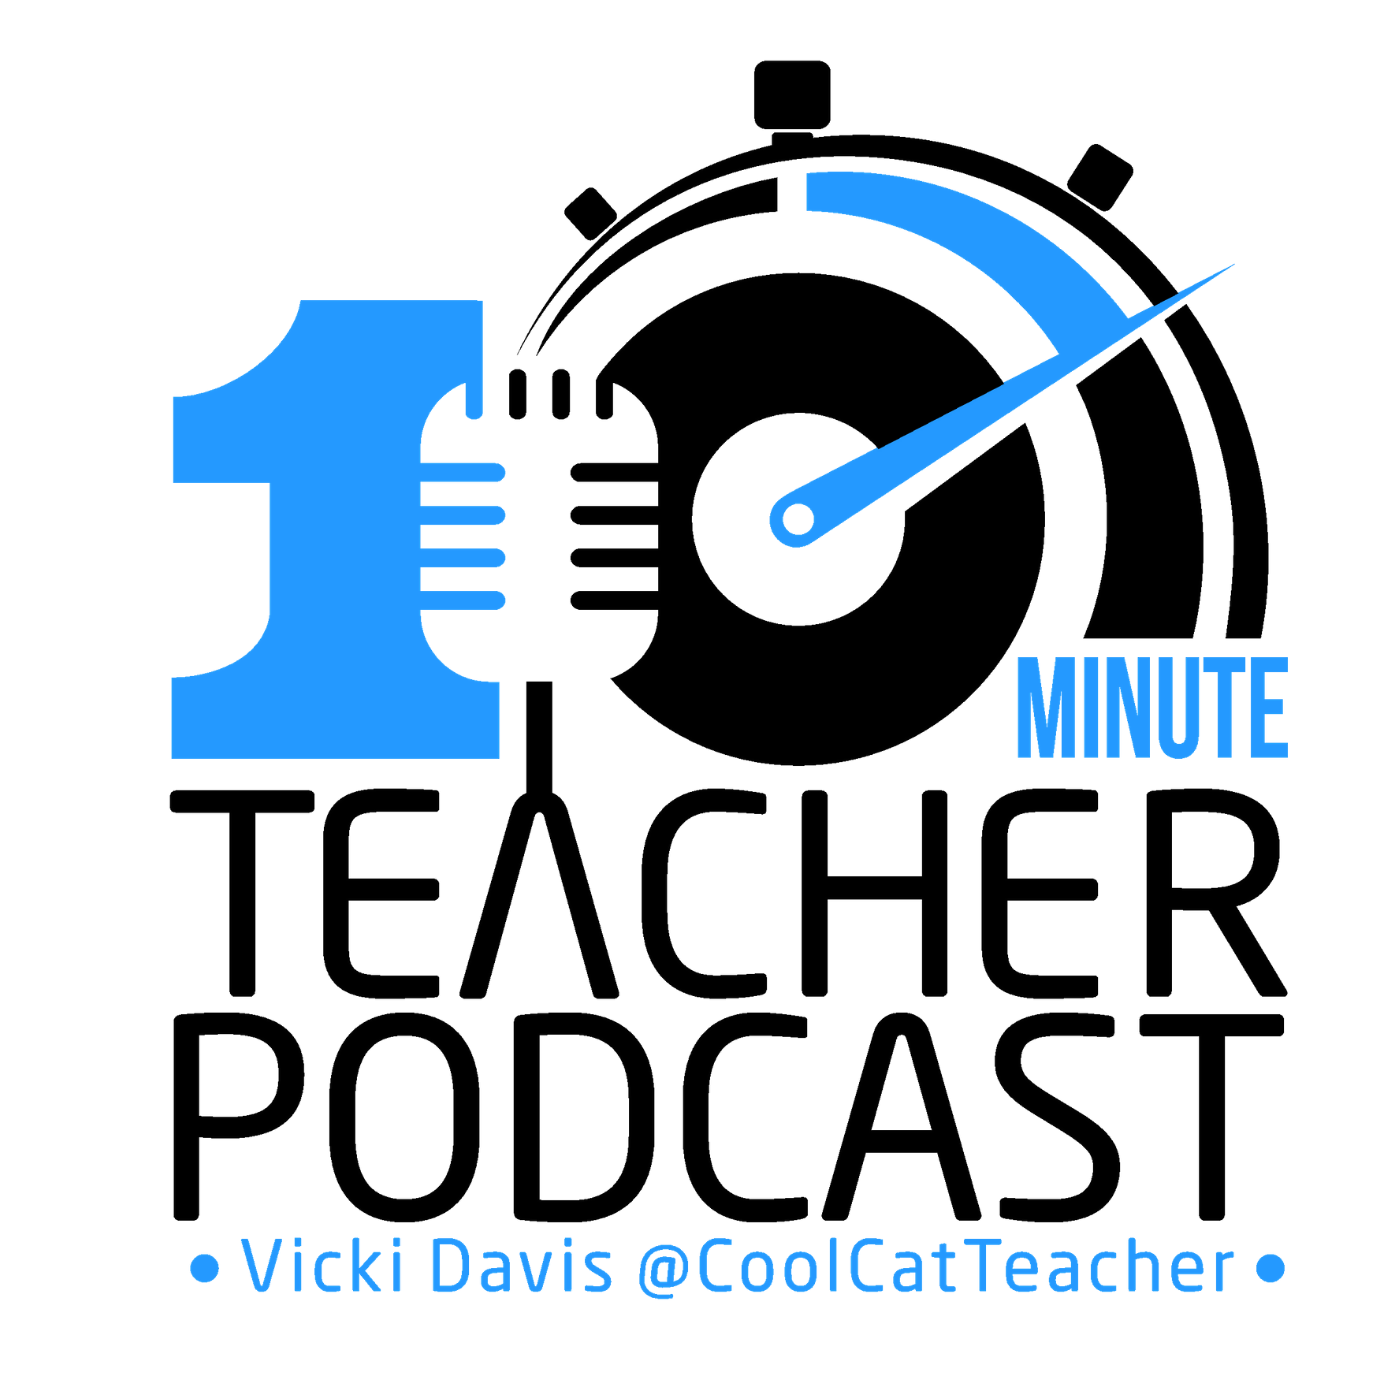 10-minute-teacher-podcast-coolcatteacher-1.png